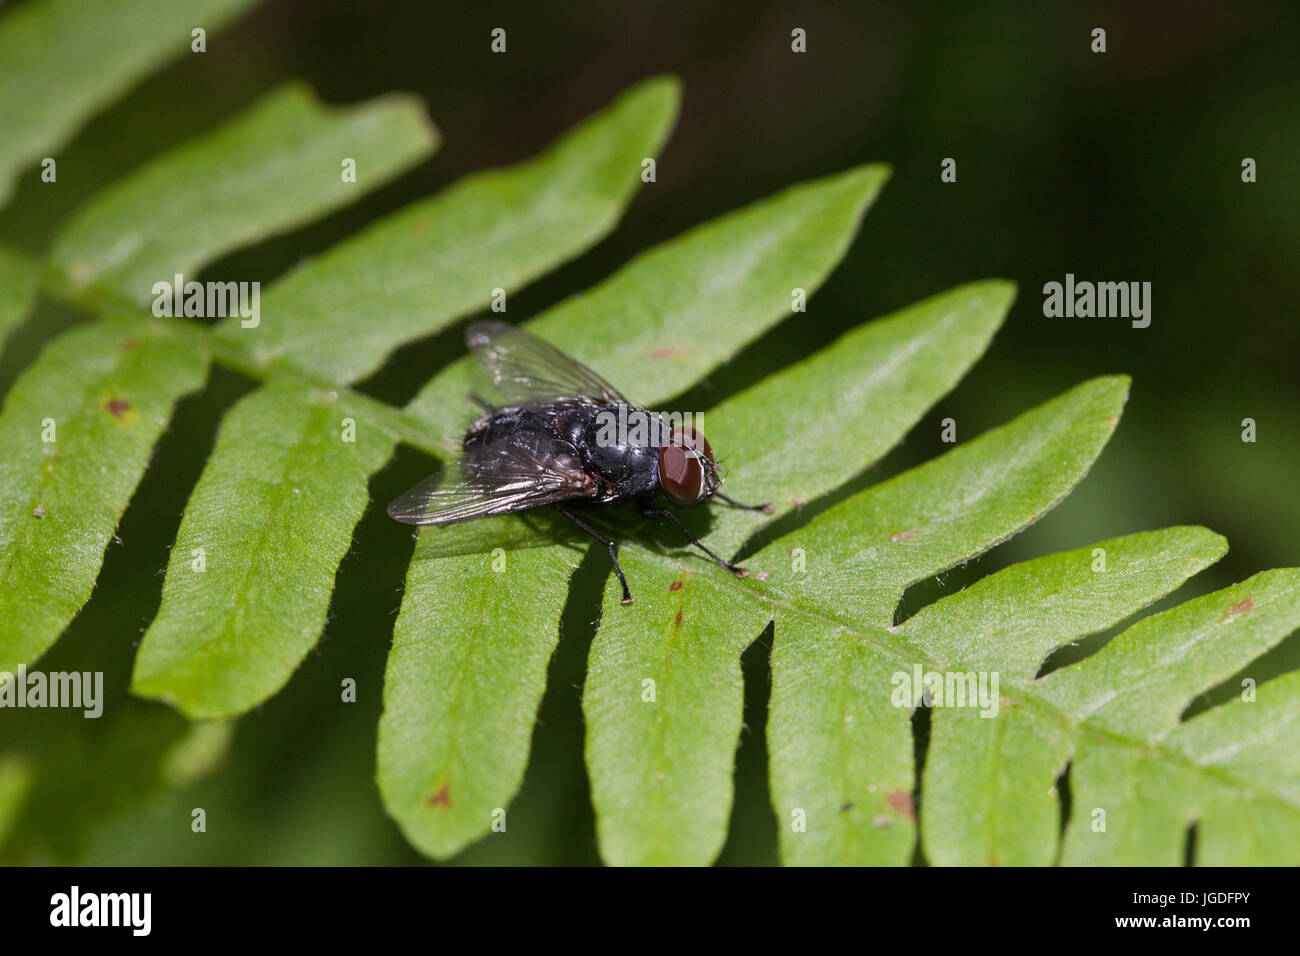 Schwarze Fliege ruhen auf einem grünen Farn Blatt. Unscharfen Hintergrund isoliert. Stockfoto